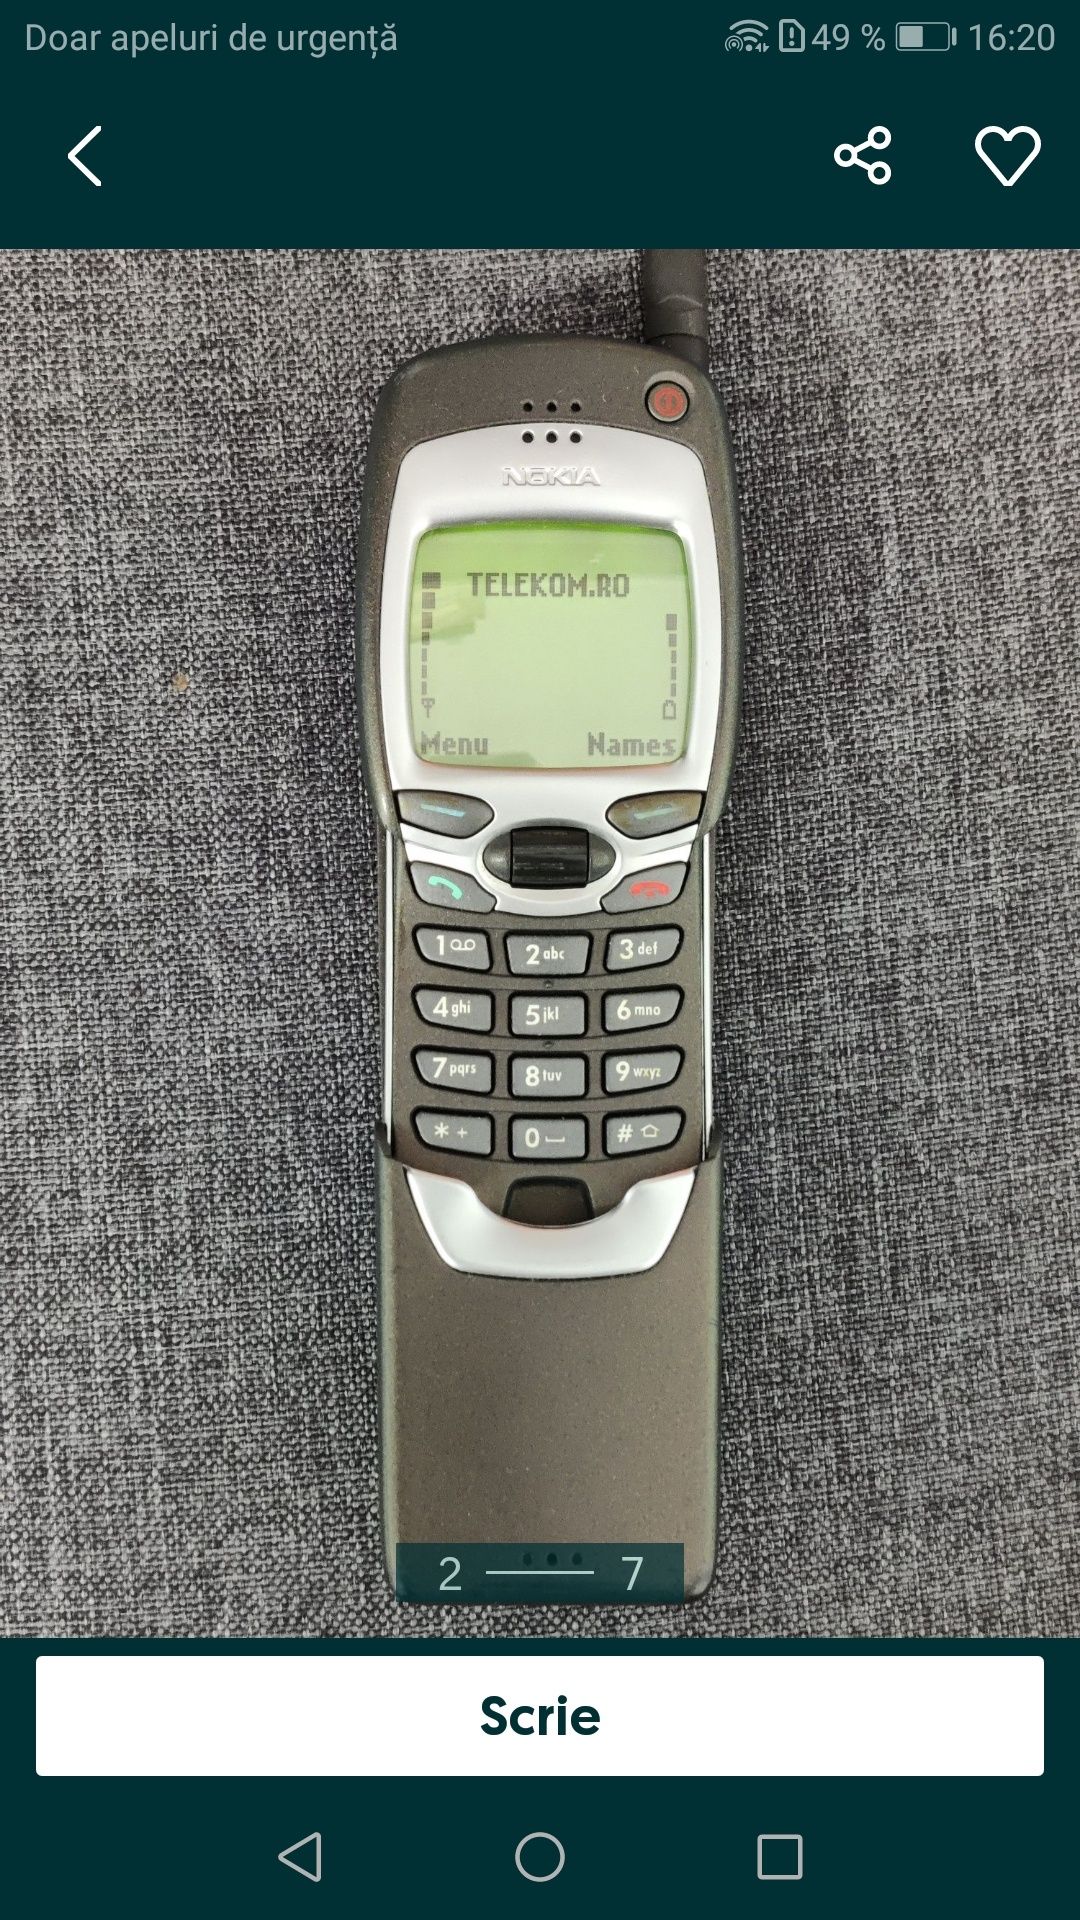 Nokia 7110 impecabil